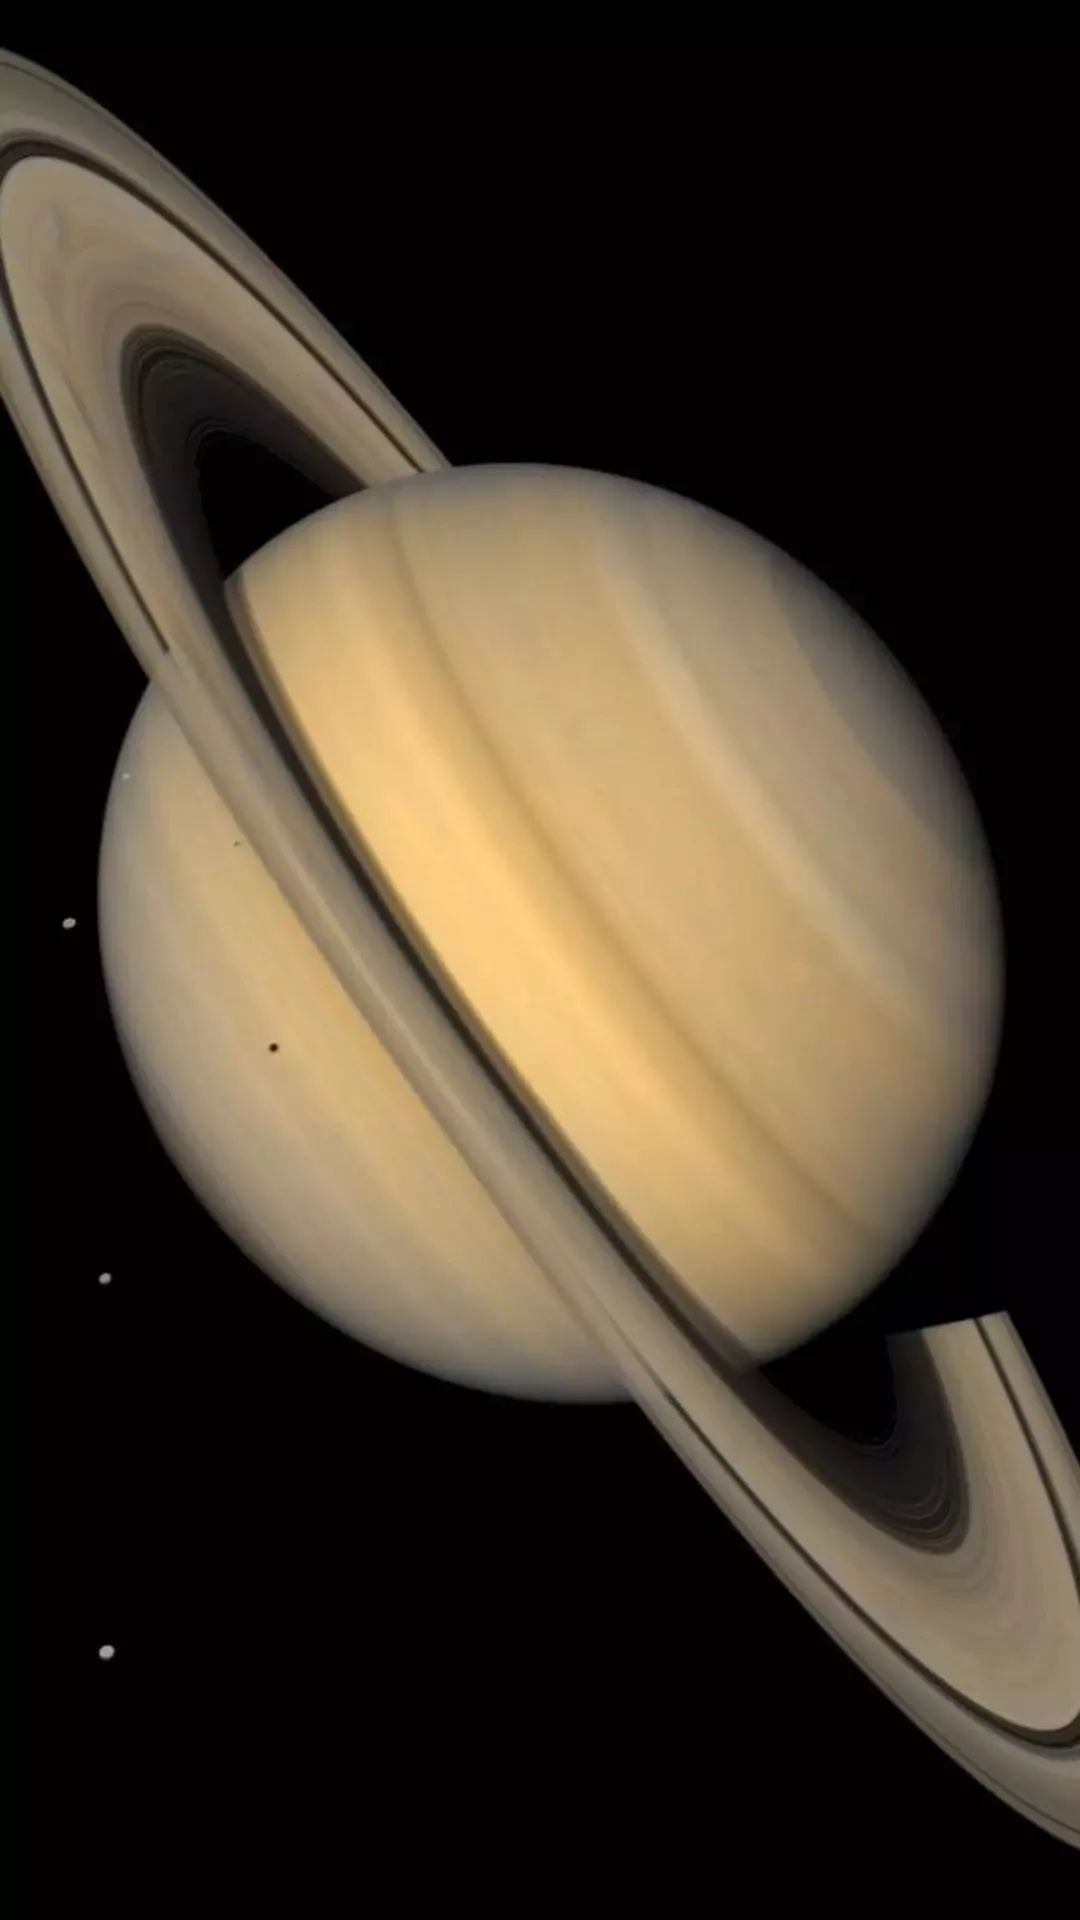 土星虽然不是太阳系最大的行星,但却有着所有行星中最大的光环